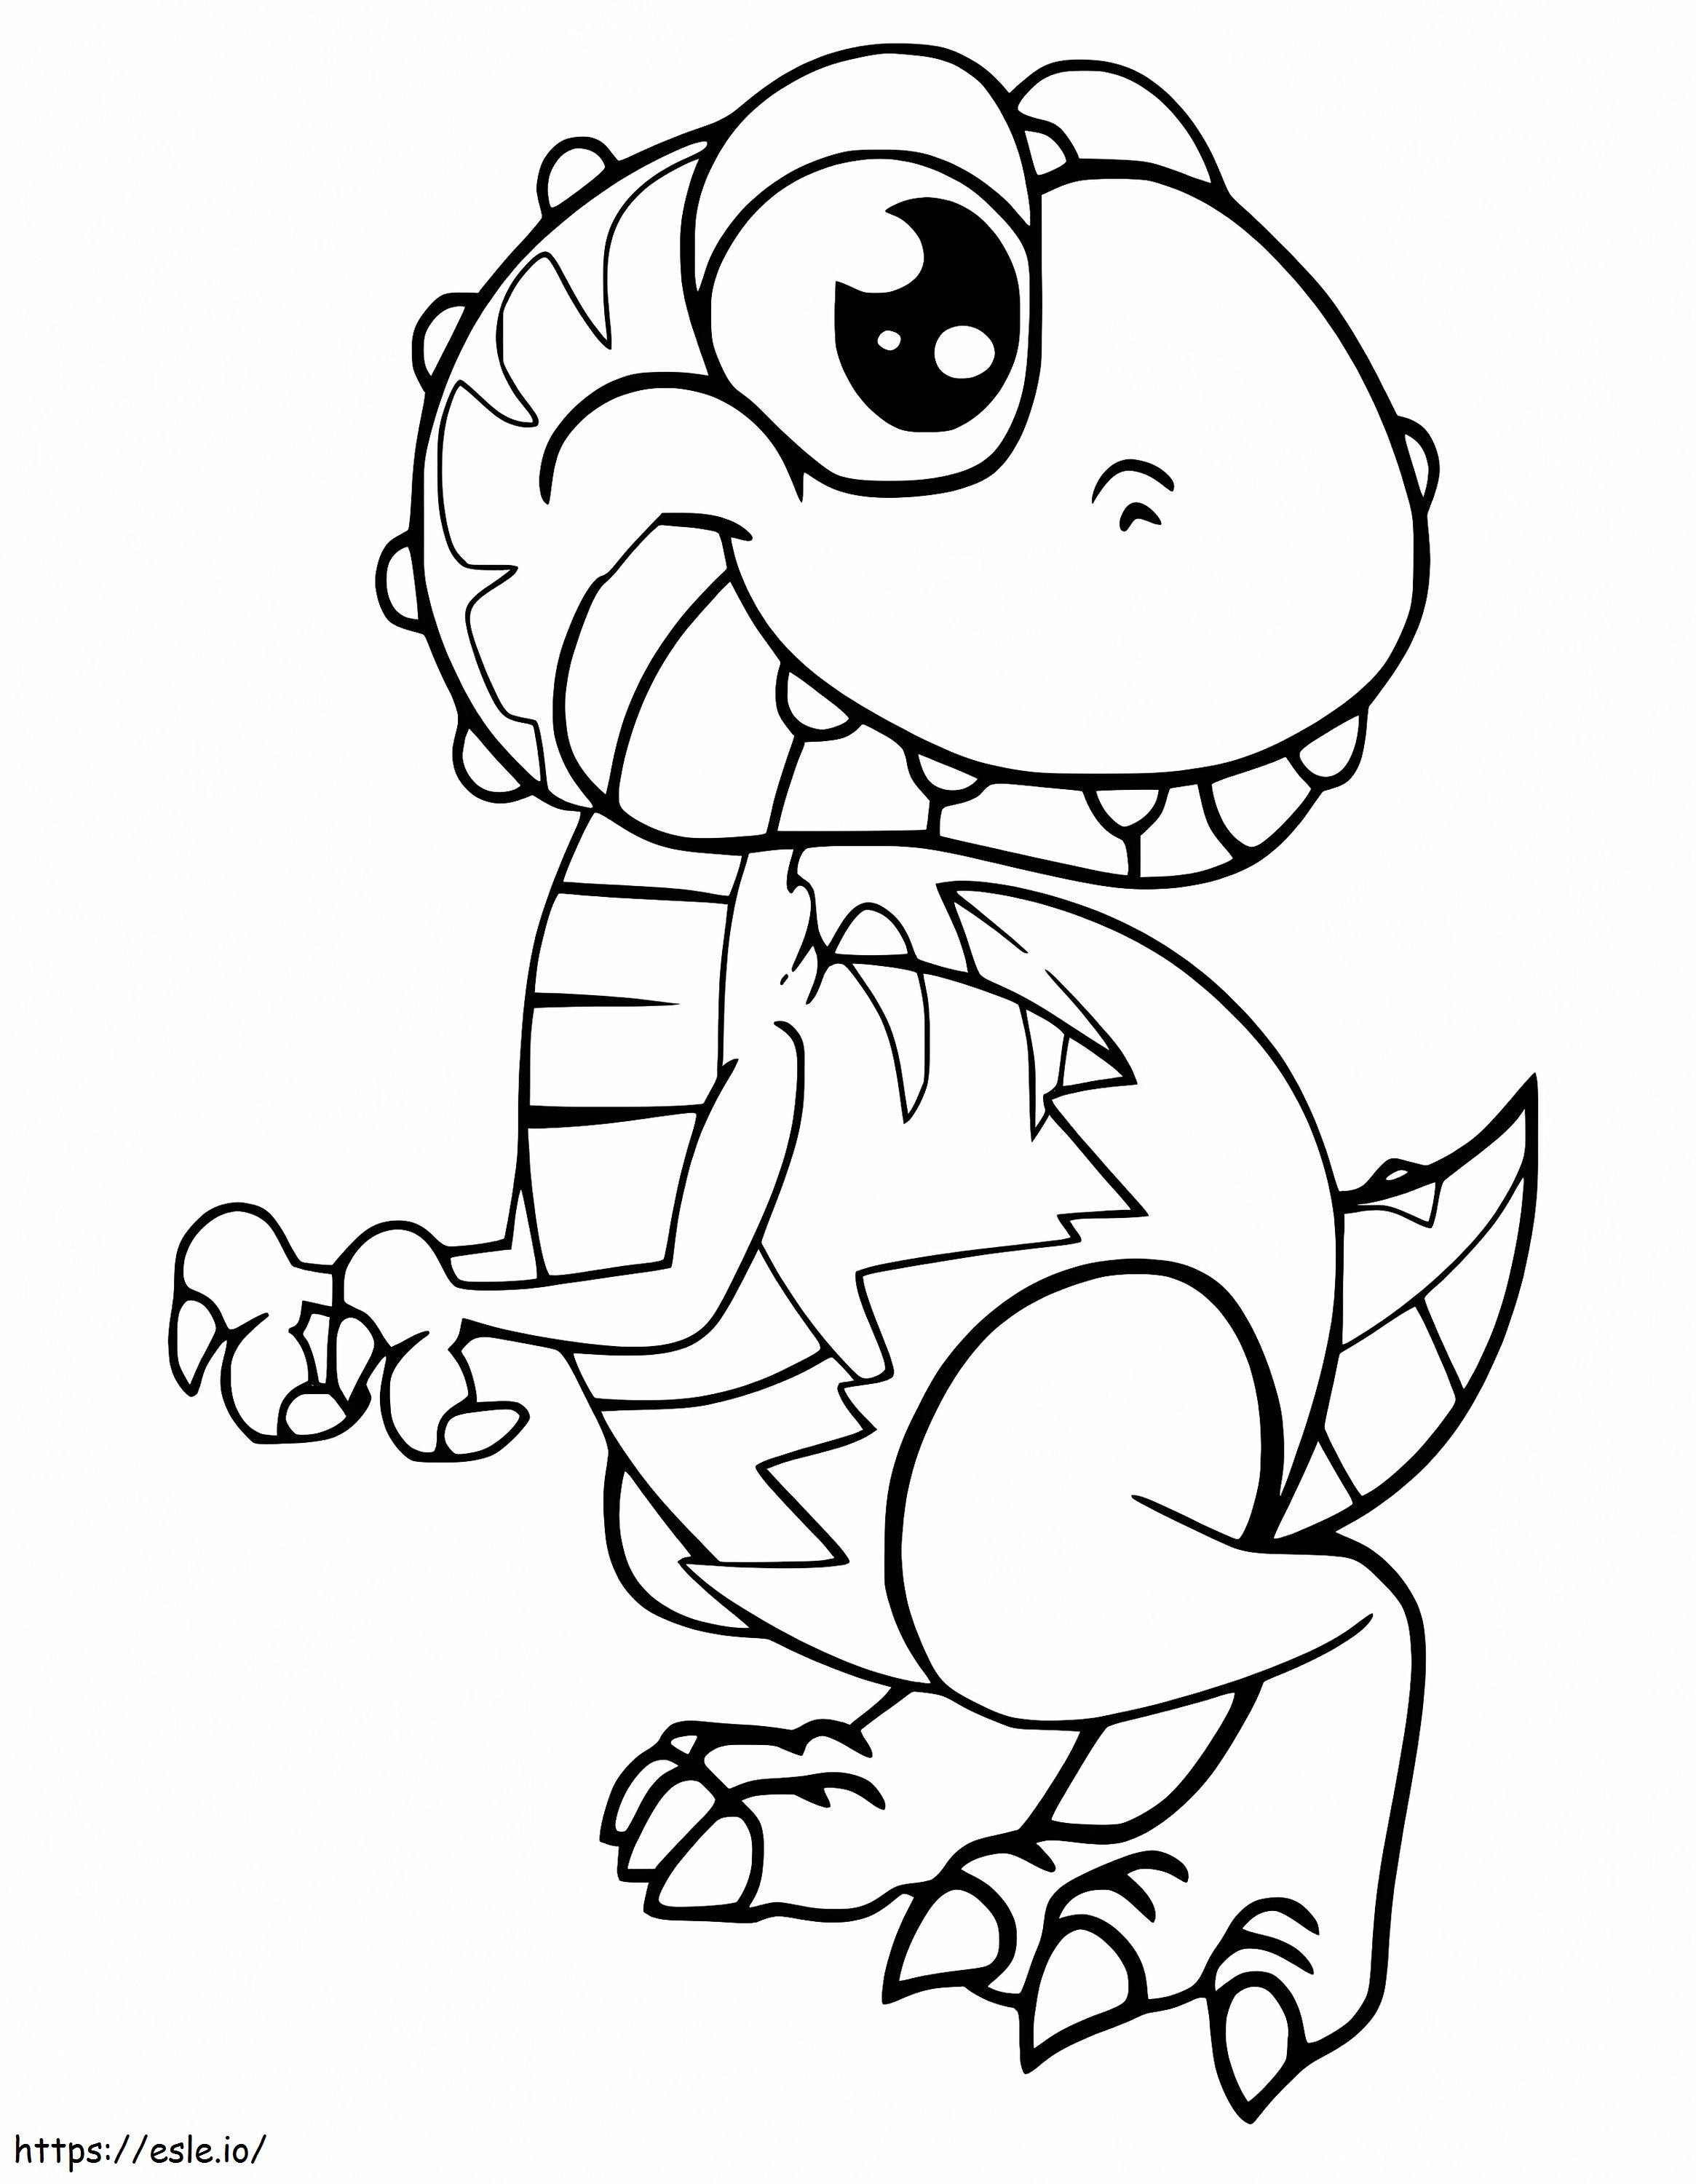 Shelldon The Baby Dinosaur coloring page